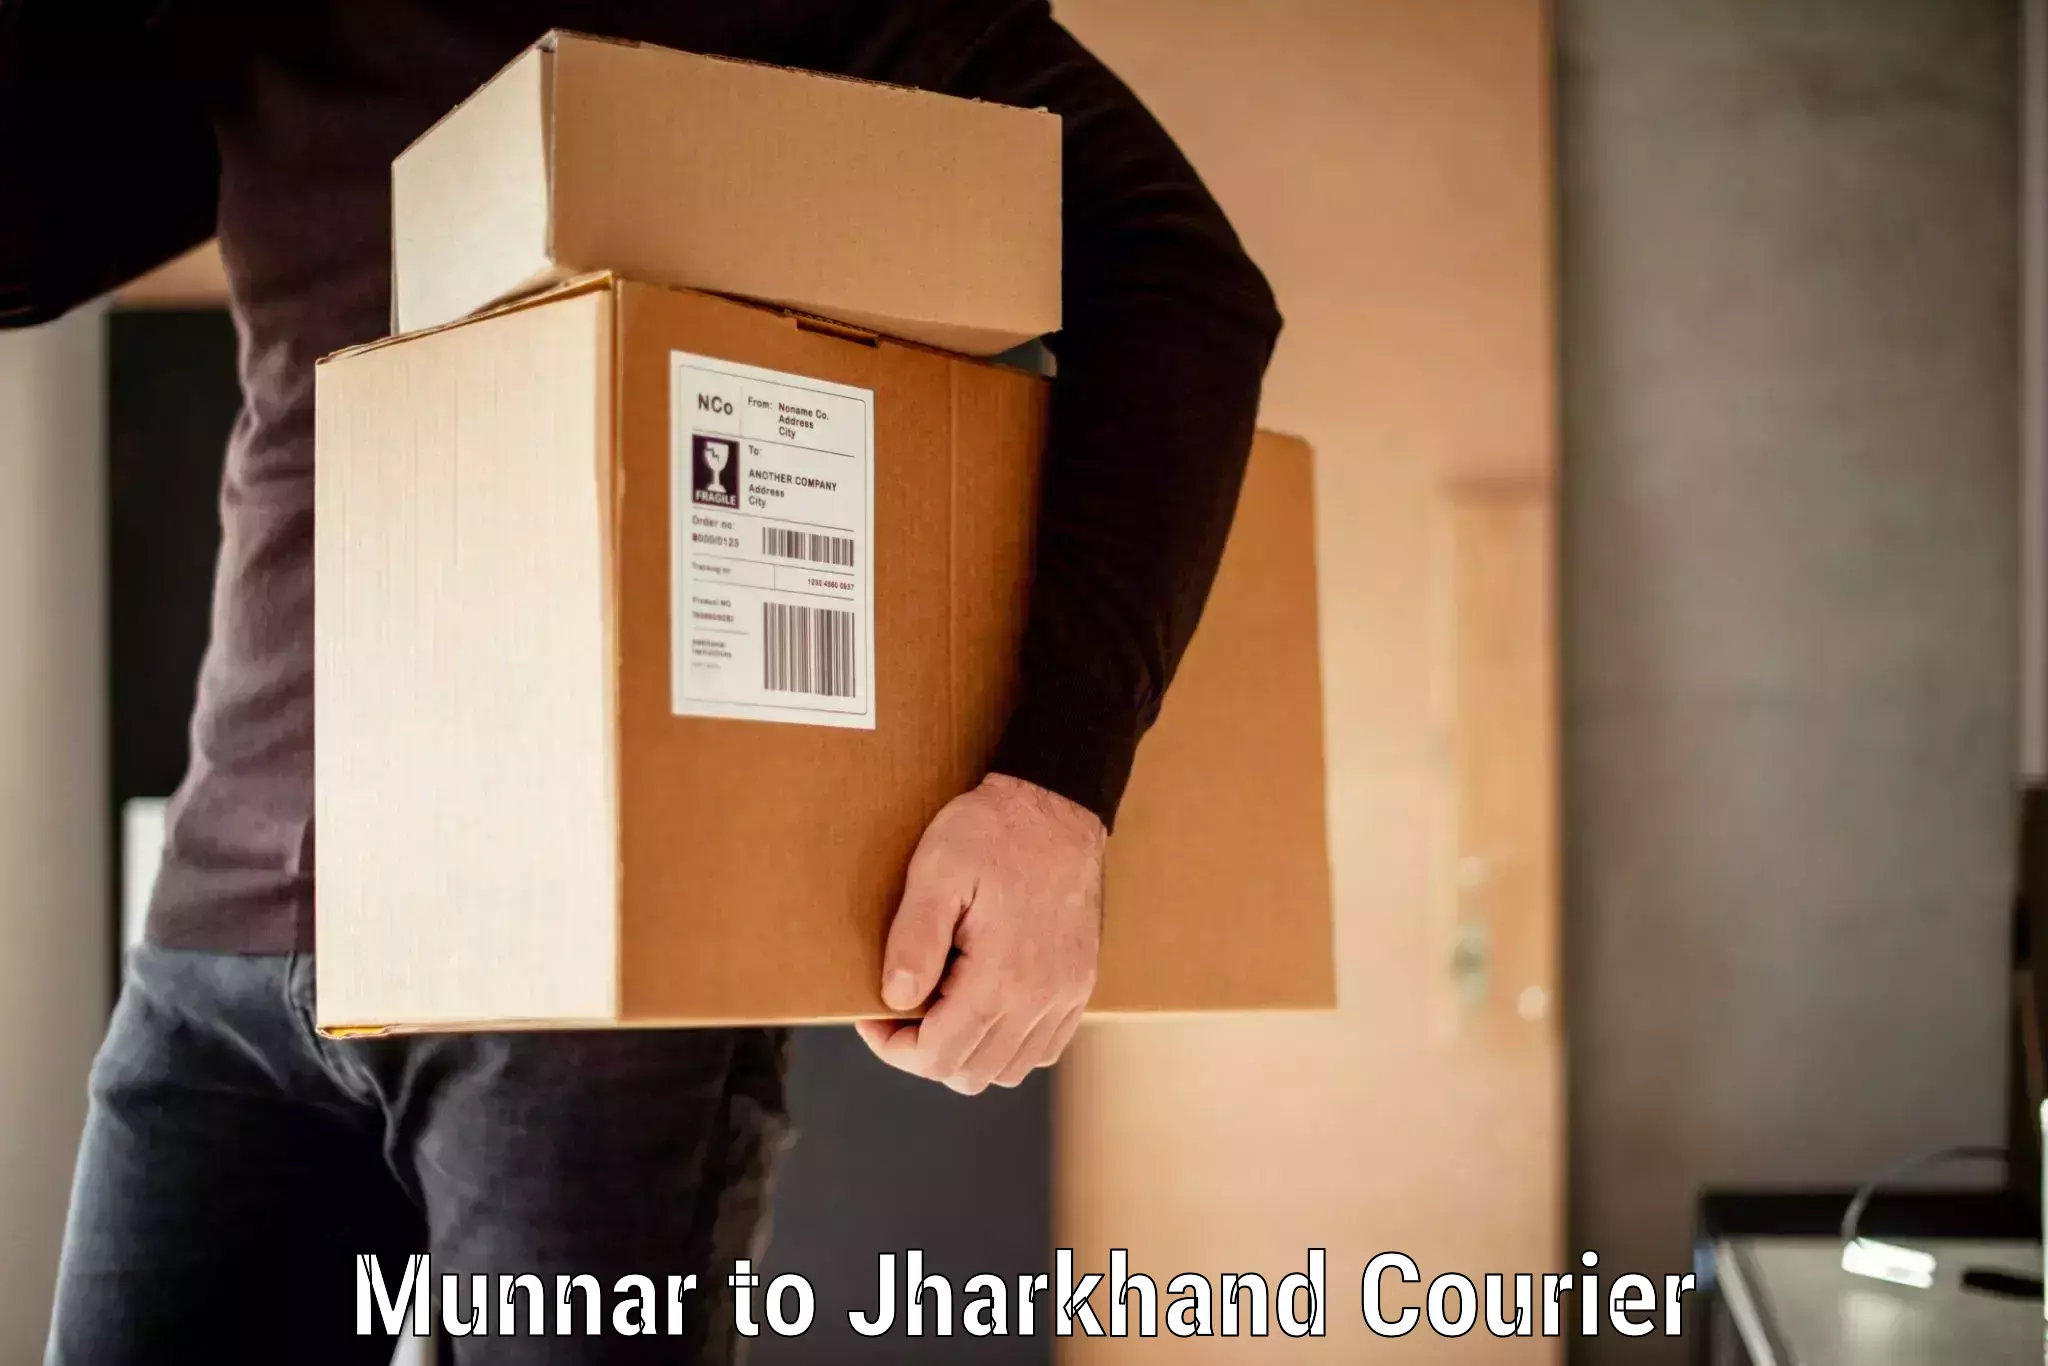 Baggage shipping calculator Munnar to Topchanchi